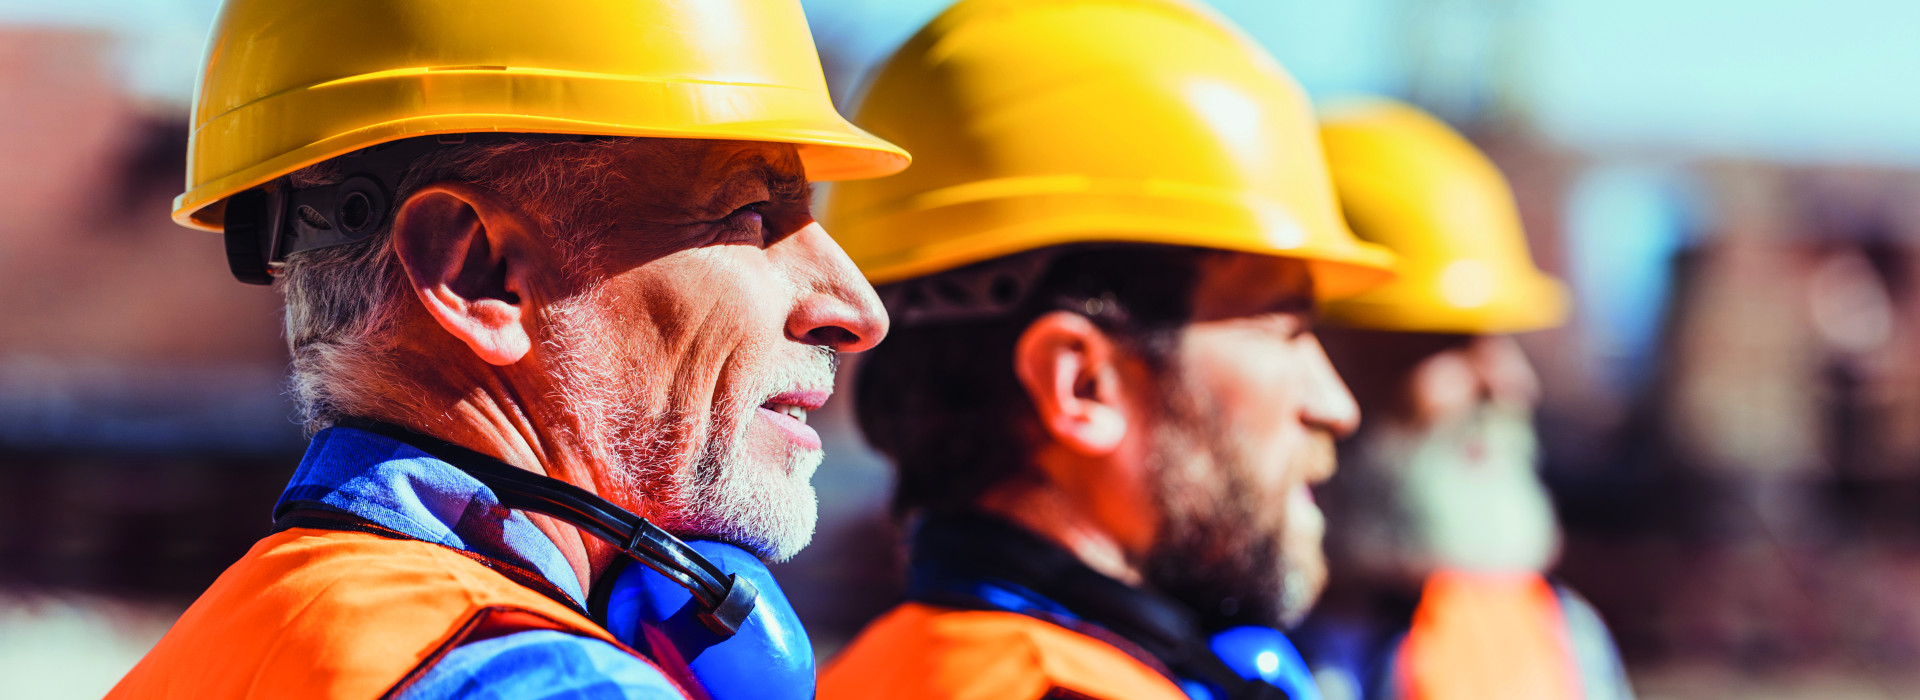 Trois hommes sur un chantier portant un casque de sécurité - arrêt de travail et reprise d'une activité